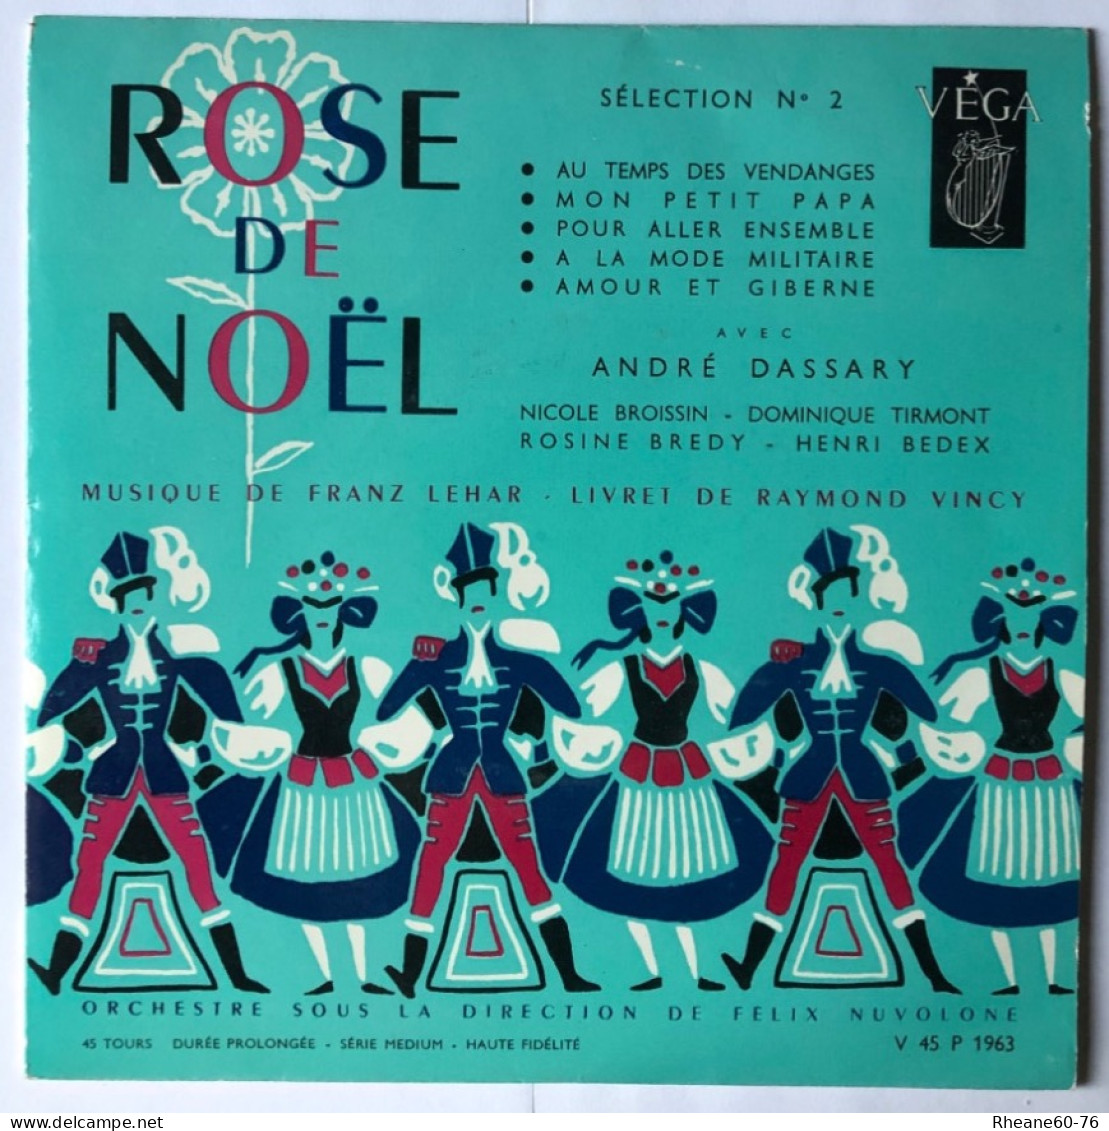 VEGA V 45 P 1963 - André Dassary Rose De Noël Sélection 2 - Musique LEHAR - Série Médium Haute Fidélité - Sans Livret - Formats Spéciaux